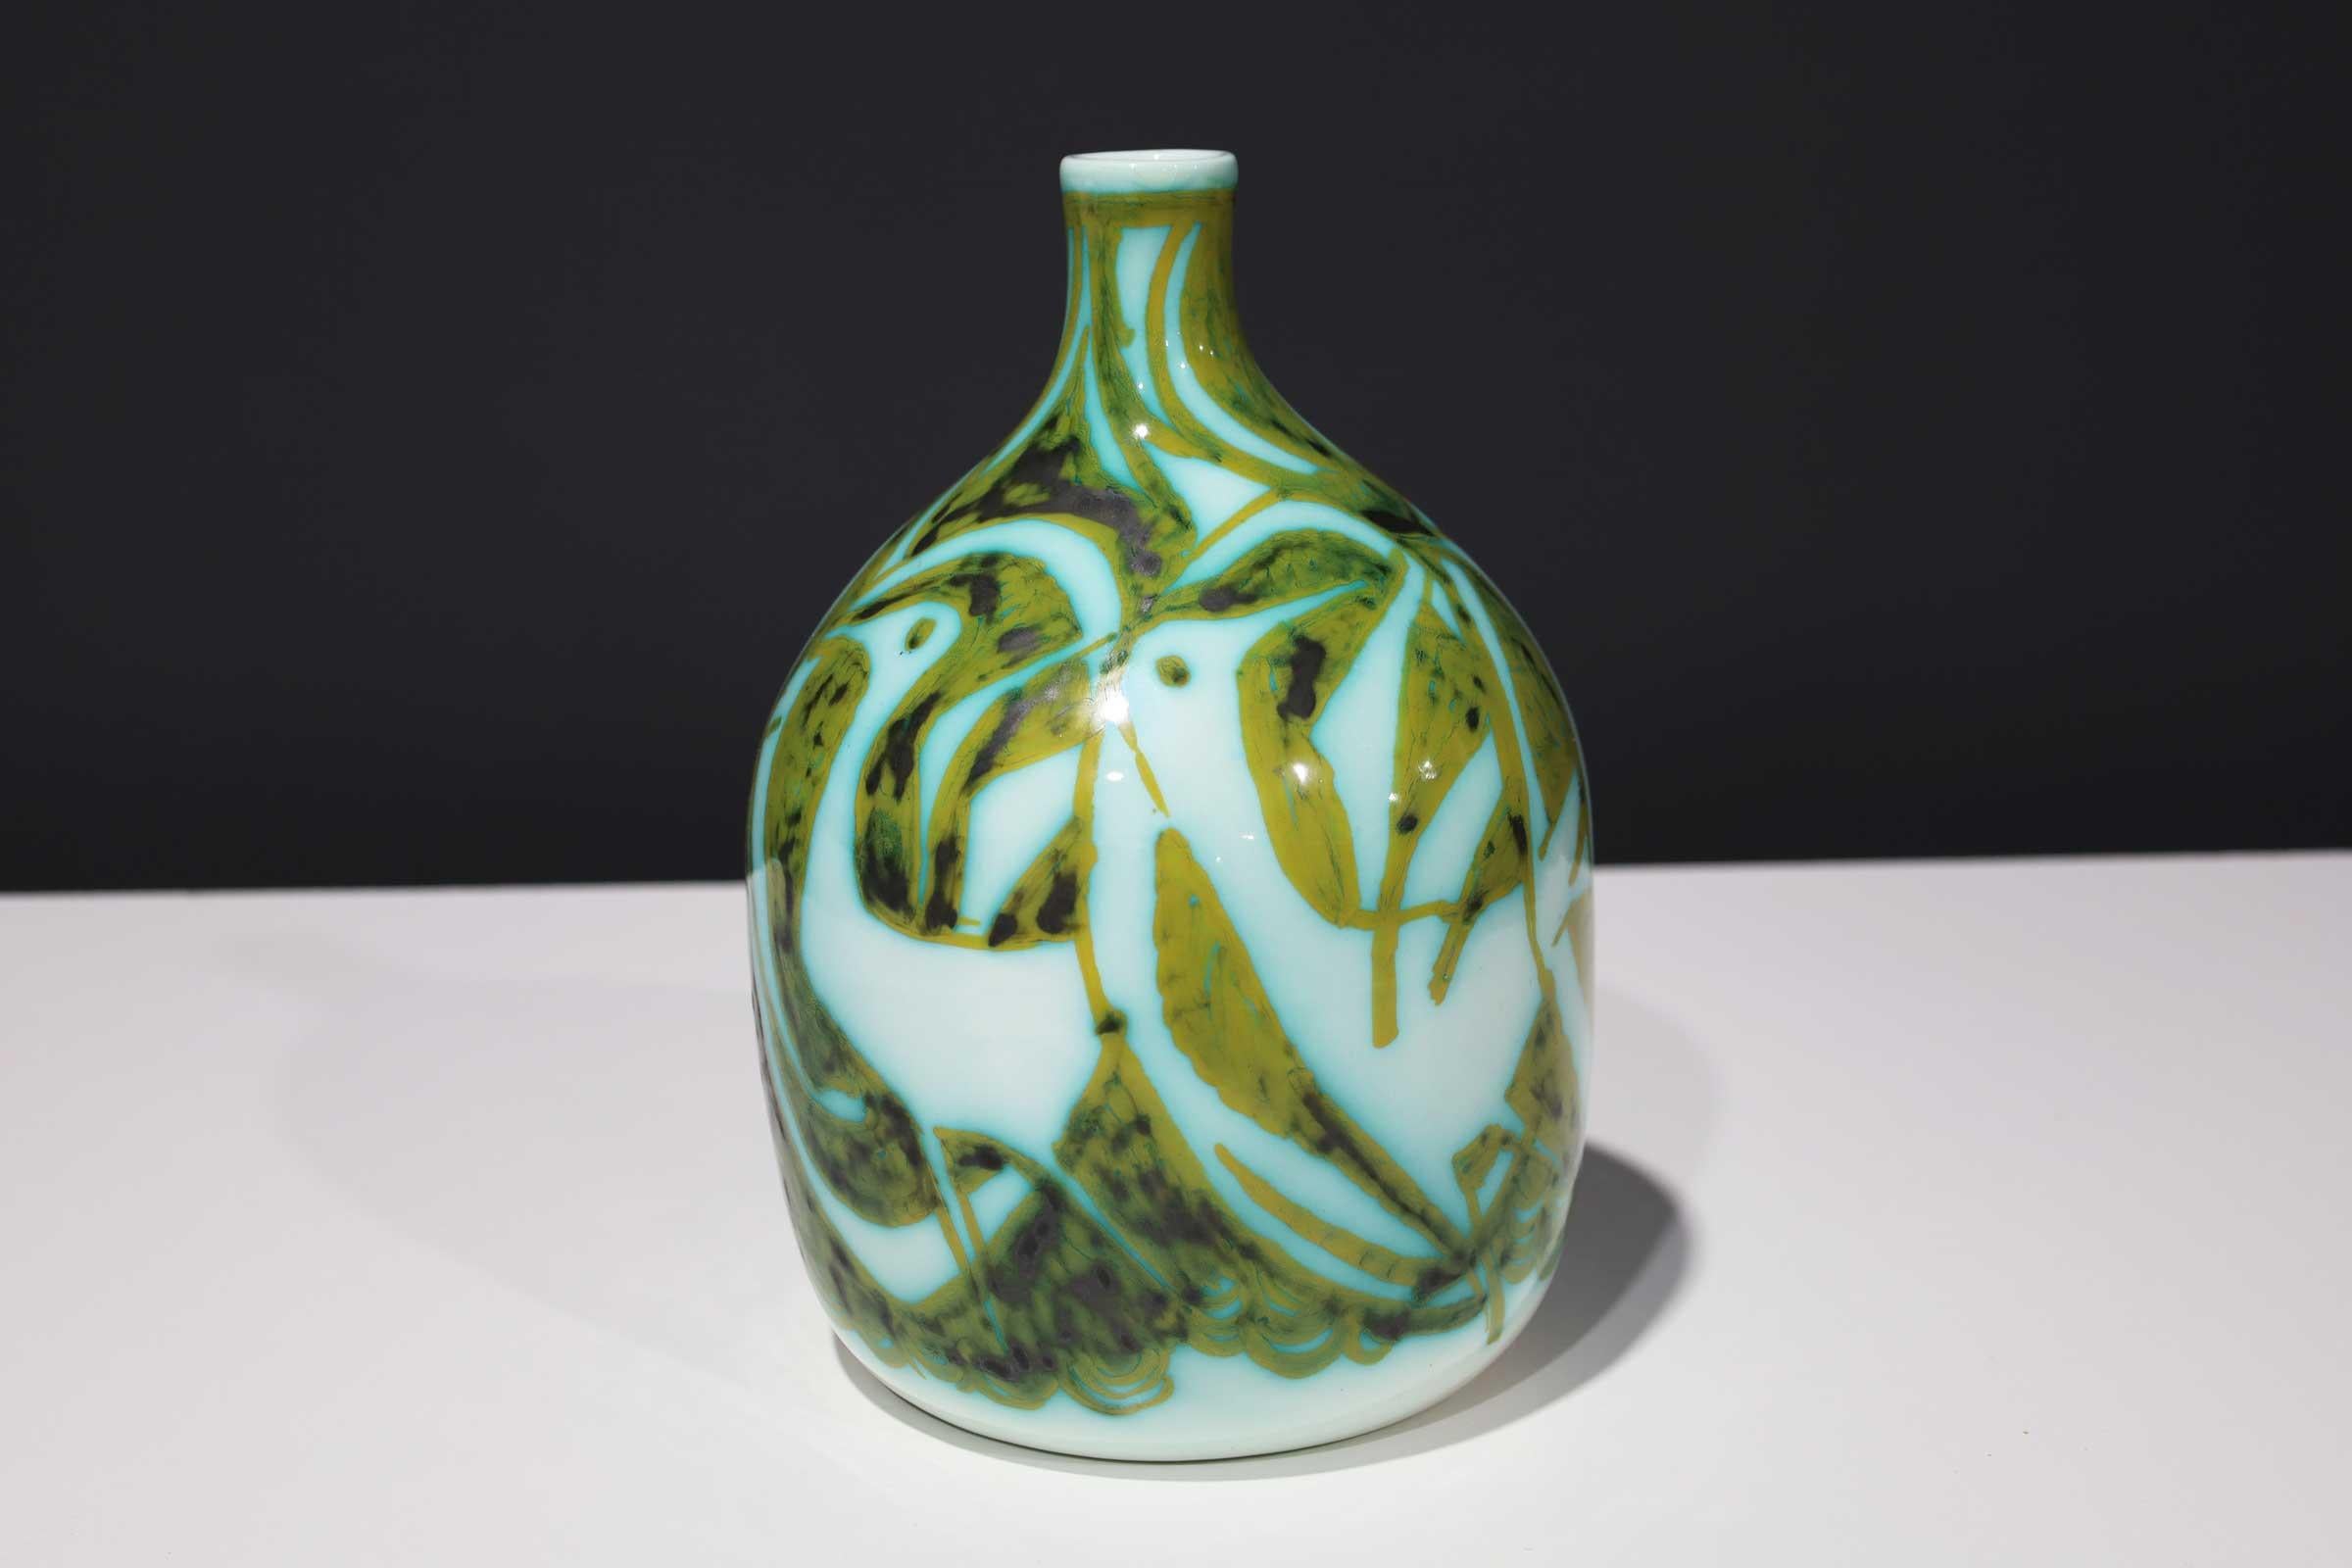 Vase Alessio Tasca pour Raymor, céramique, vert et blanc, signé.